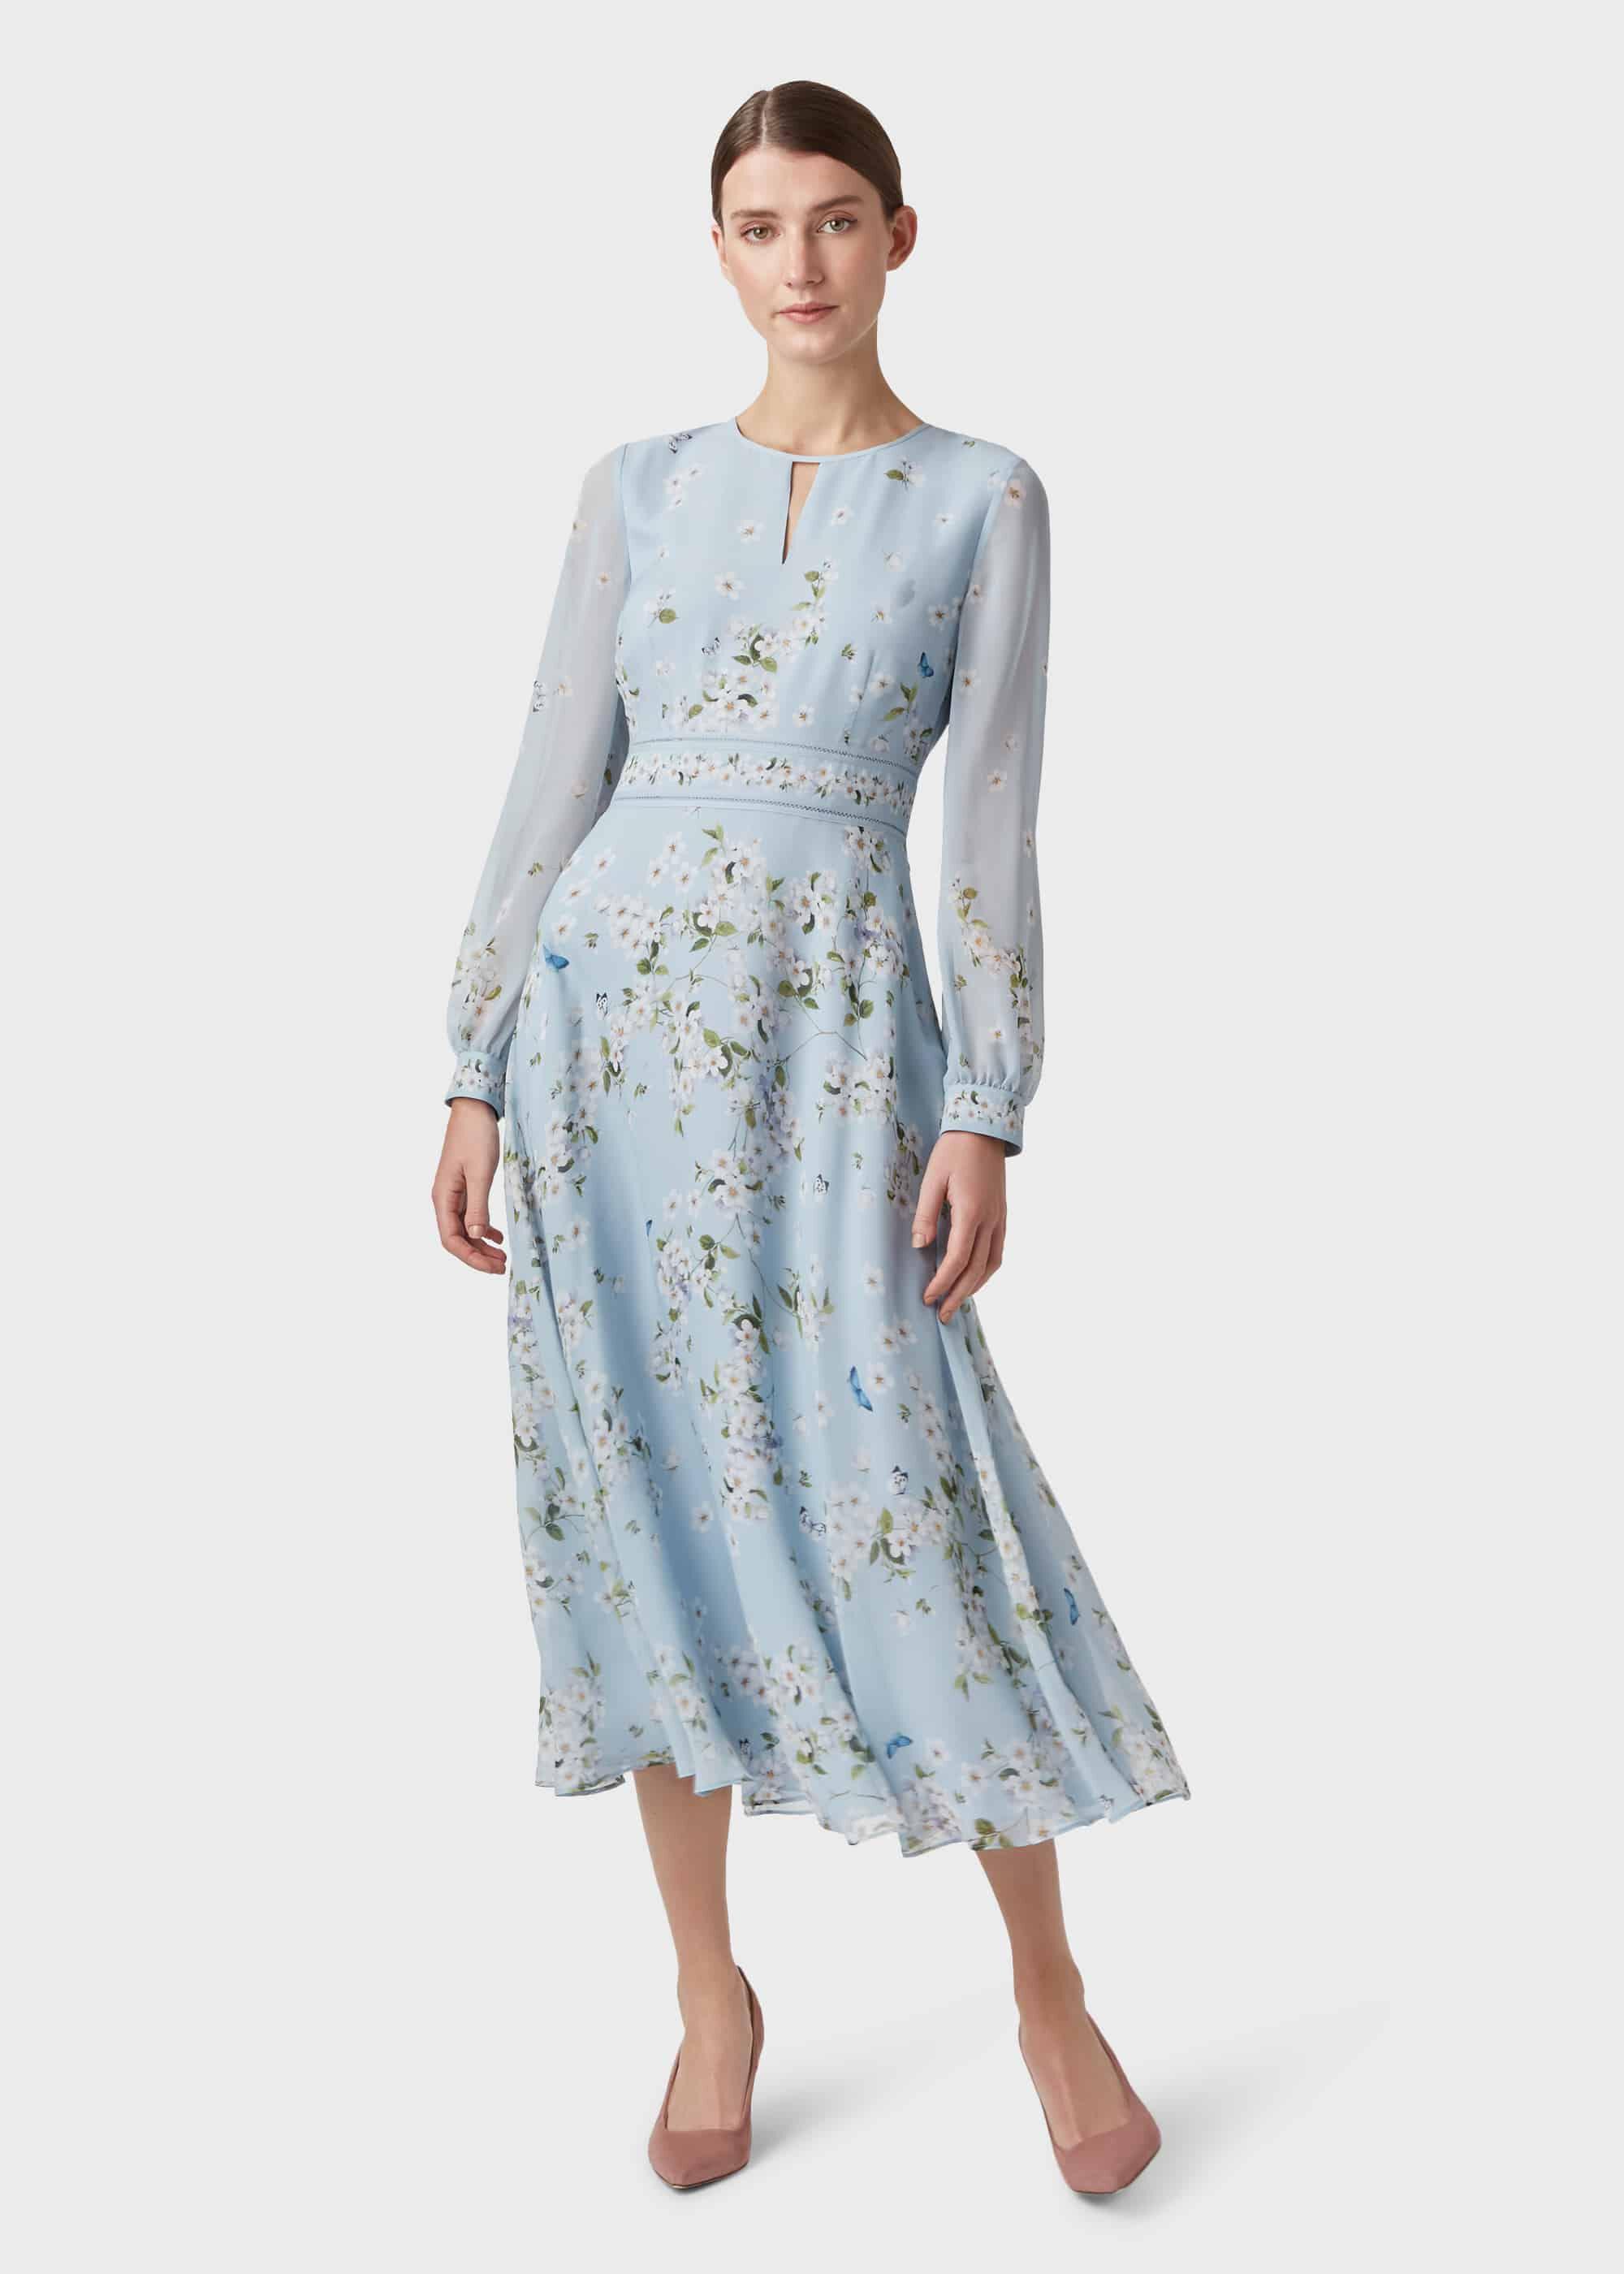 Hobbs Skye Silk Floral Dress in Blue | Lyst UK